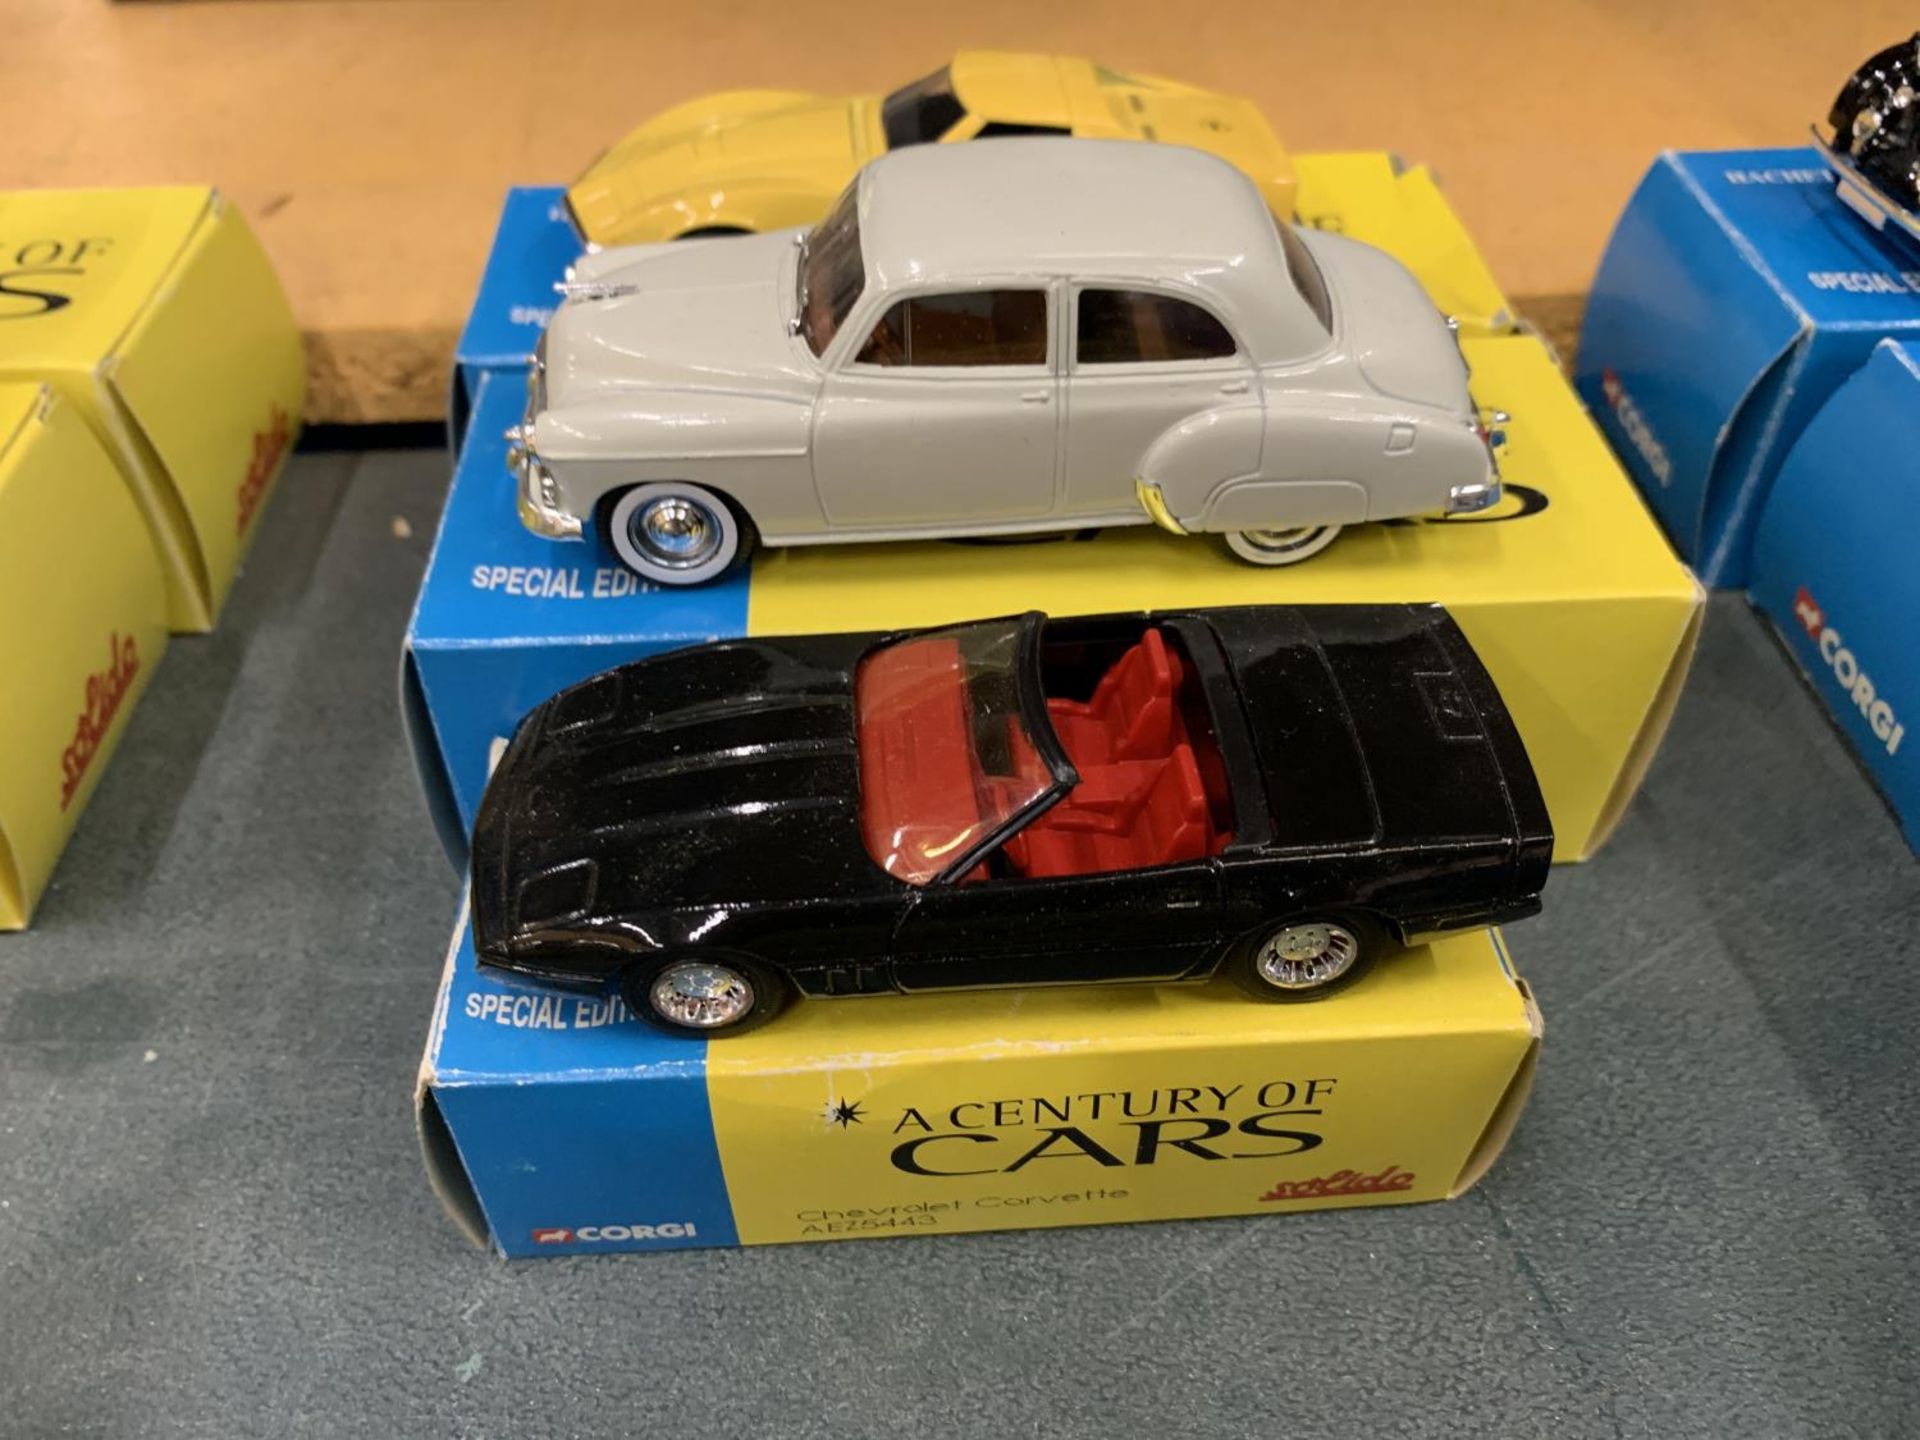 THREE BOXED CORGI 'A CENTURY OF CARS' TO INCLUDE A CHEVROLET CORVETTE, 1950, AND A CORVETTE JNI - Image 3 of 3